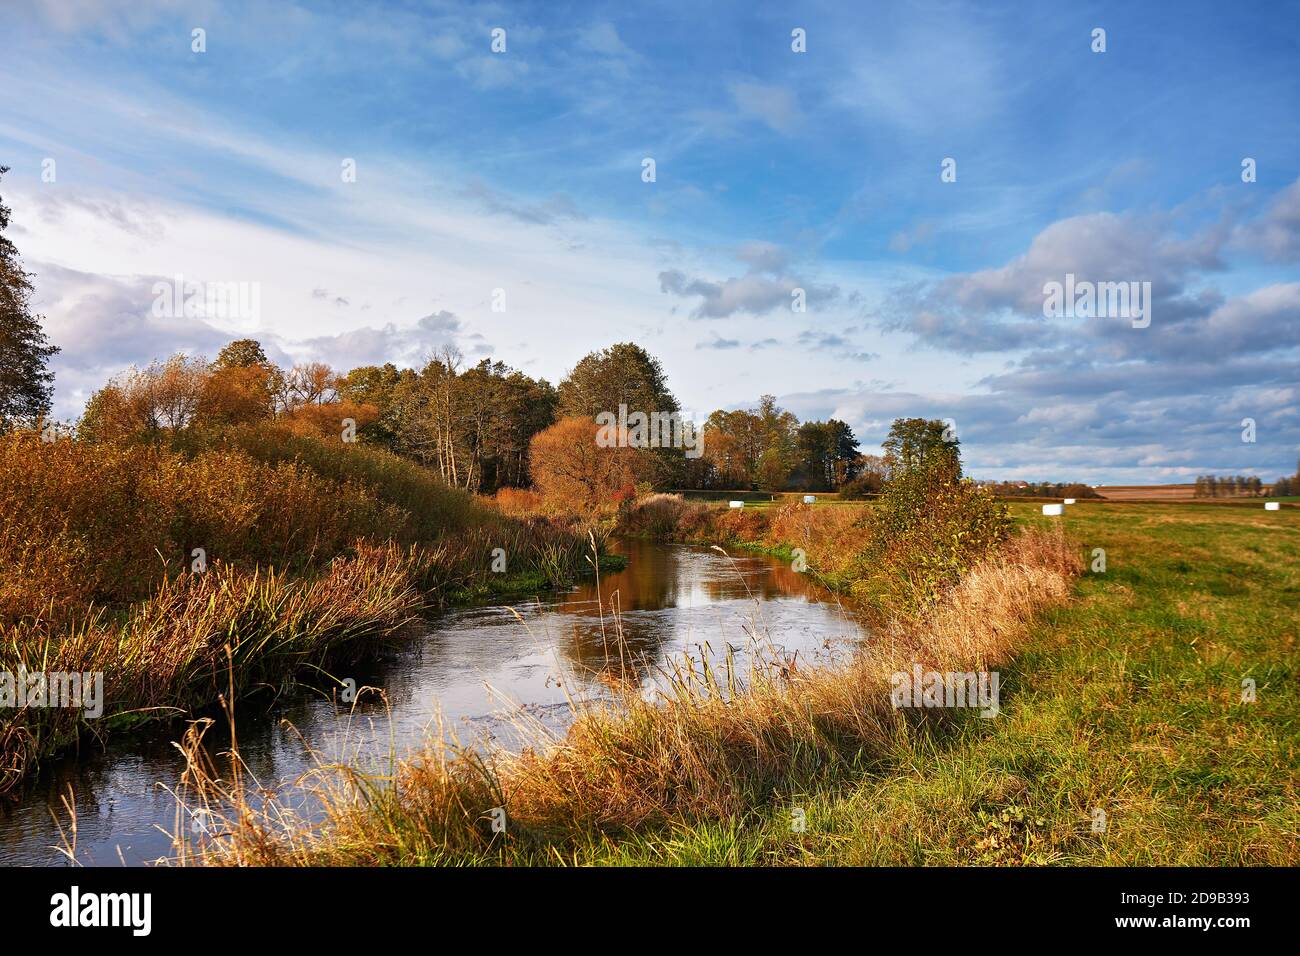 Jour d'automne ensoleillé sur la rivière et la prairie. Paysage coloré avec forêt, champ, lac. Paysage rural pittoresque. Bélarus Banque D'Images